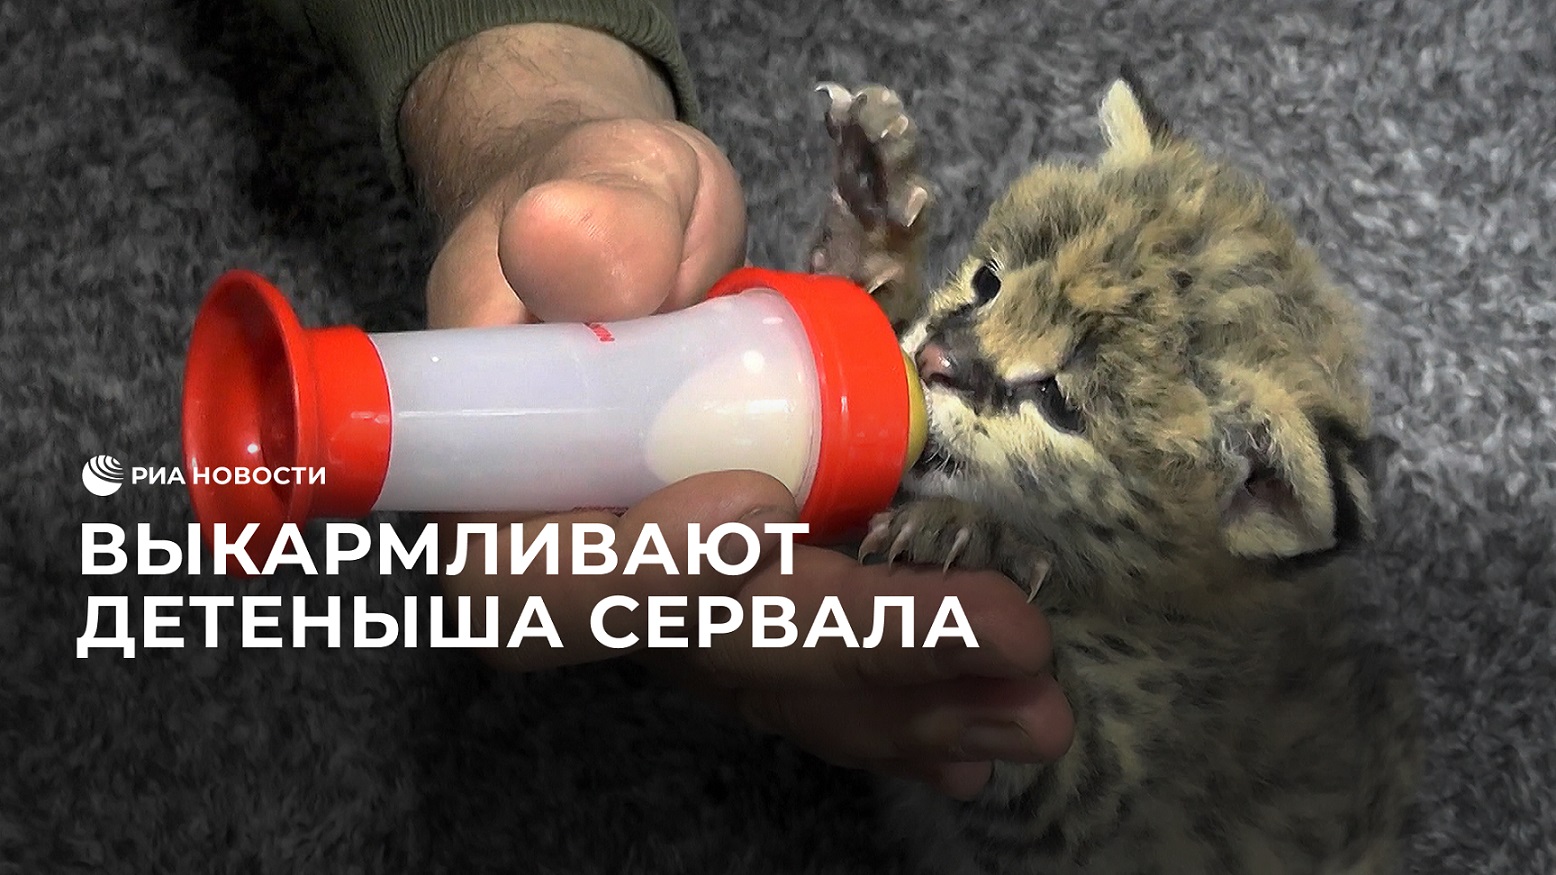 В Крымском парке сотрудники выкармливают детеныша сервала